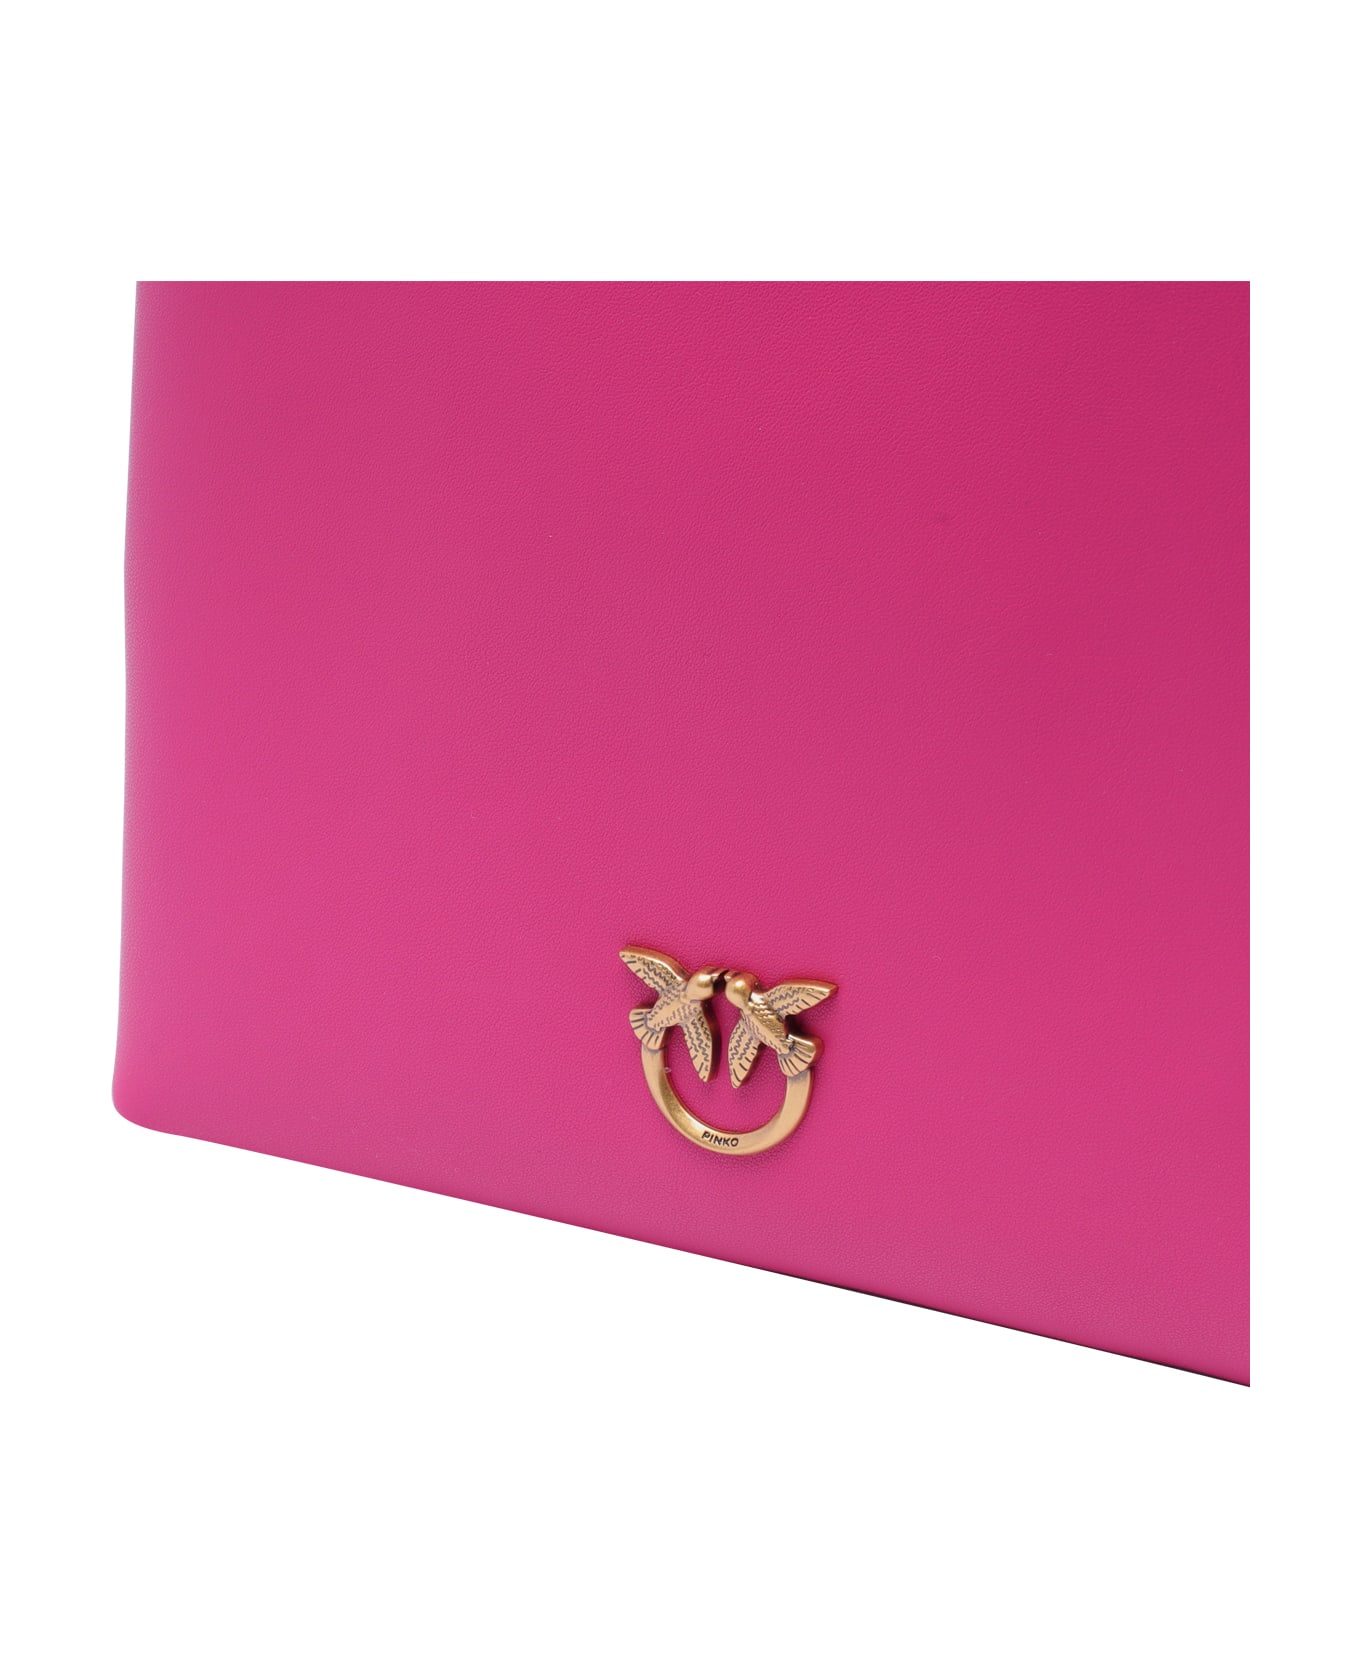 Pinko Mini Shopper Handbag - Fuchsia